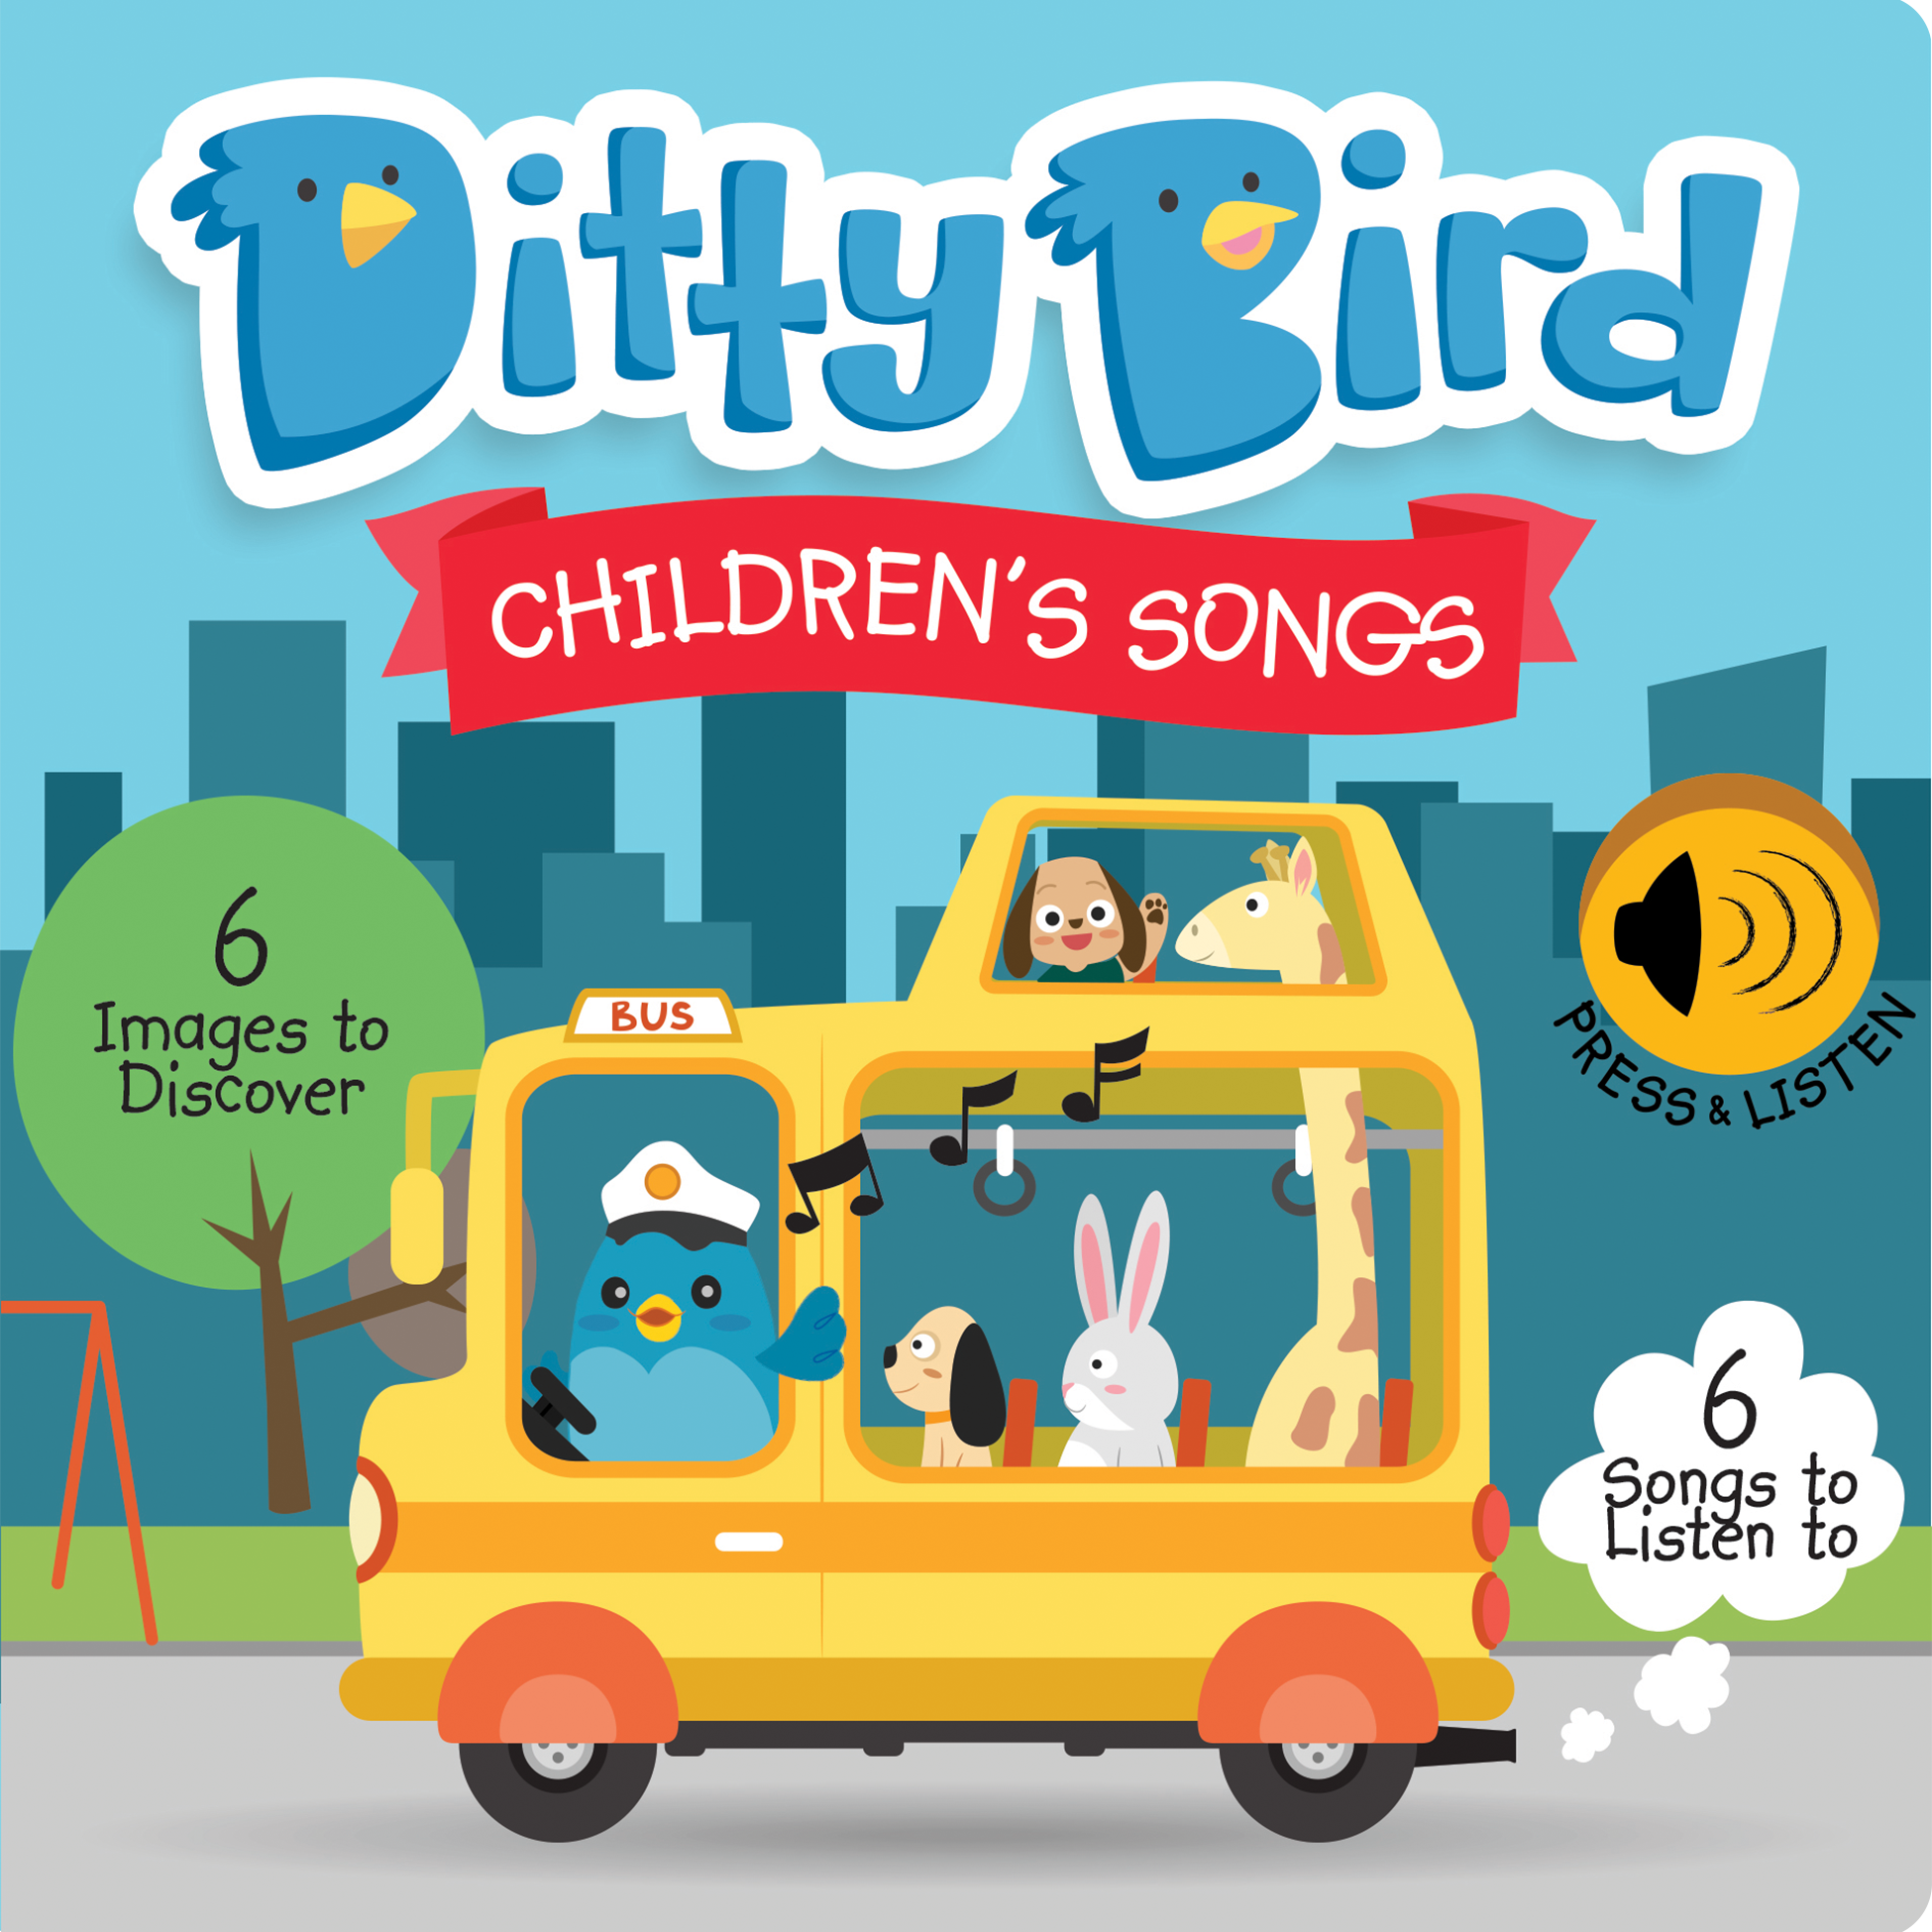 Ditty Bird - Children's Songs - HoneyBug 